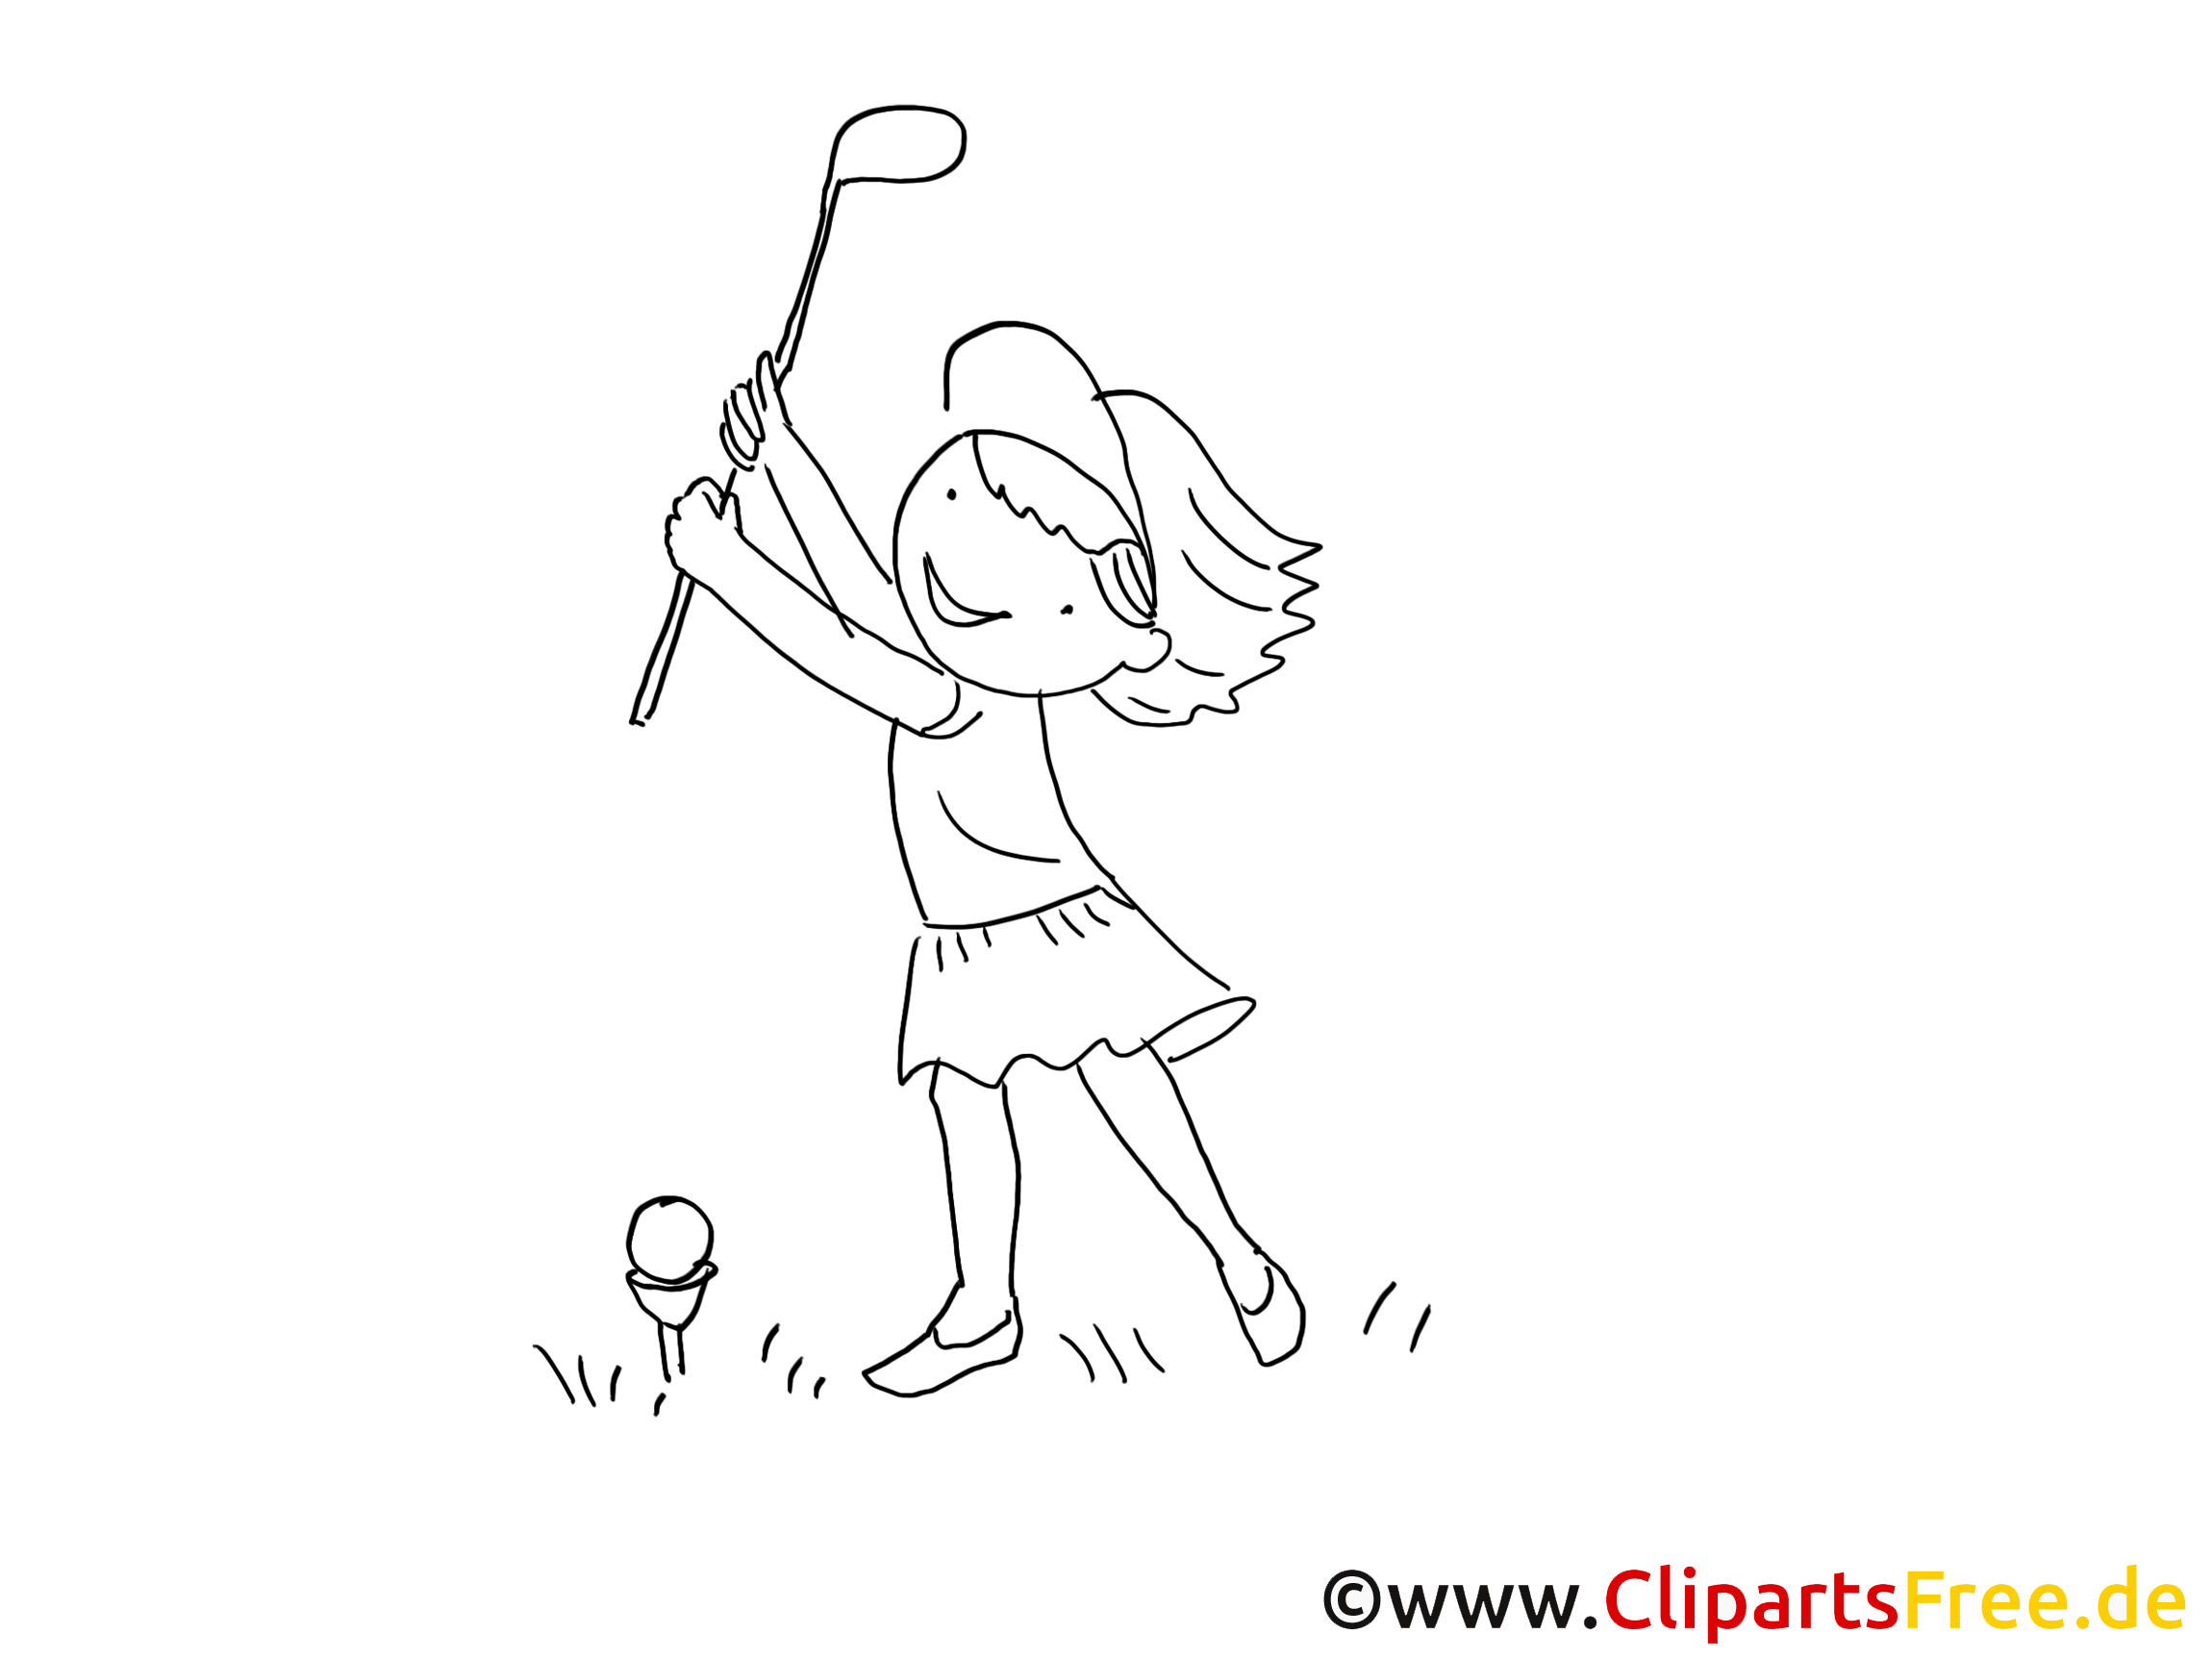 Golf image à colorier fille gratuite